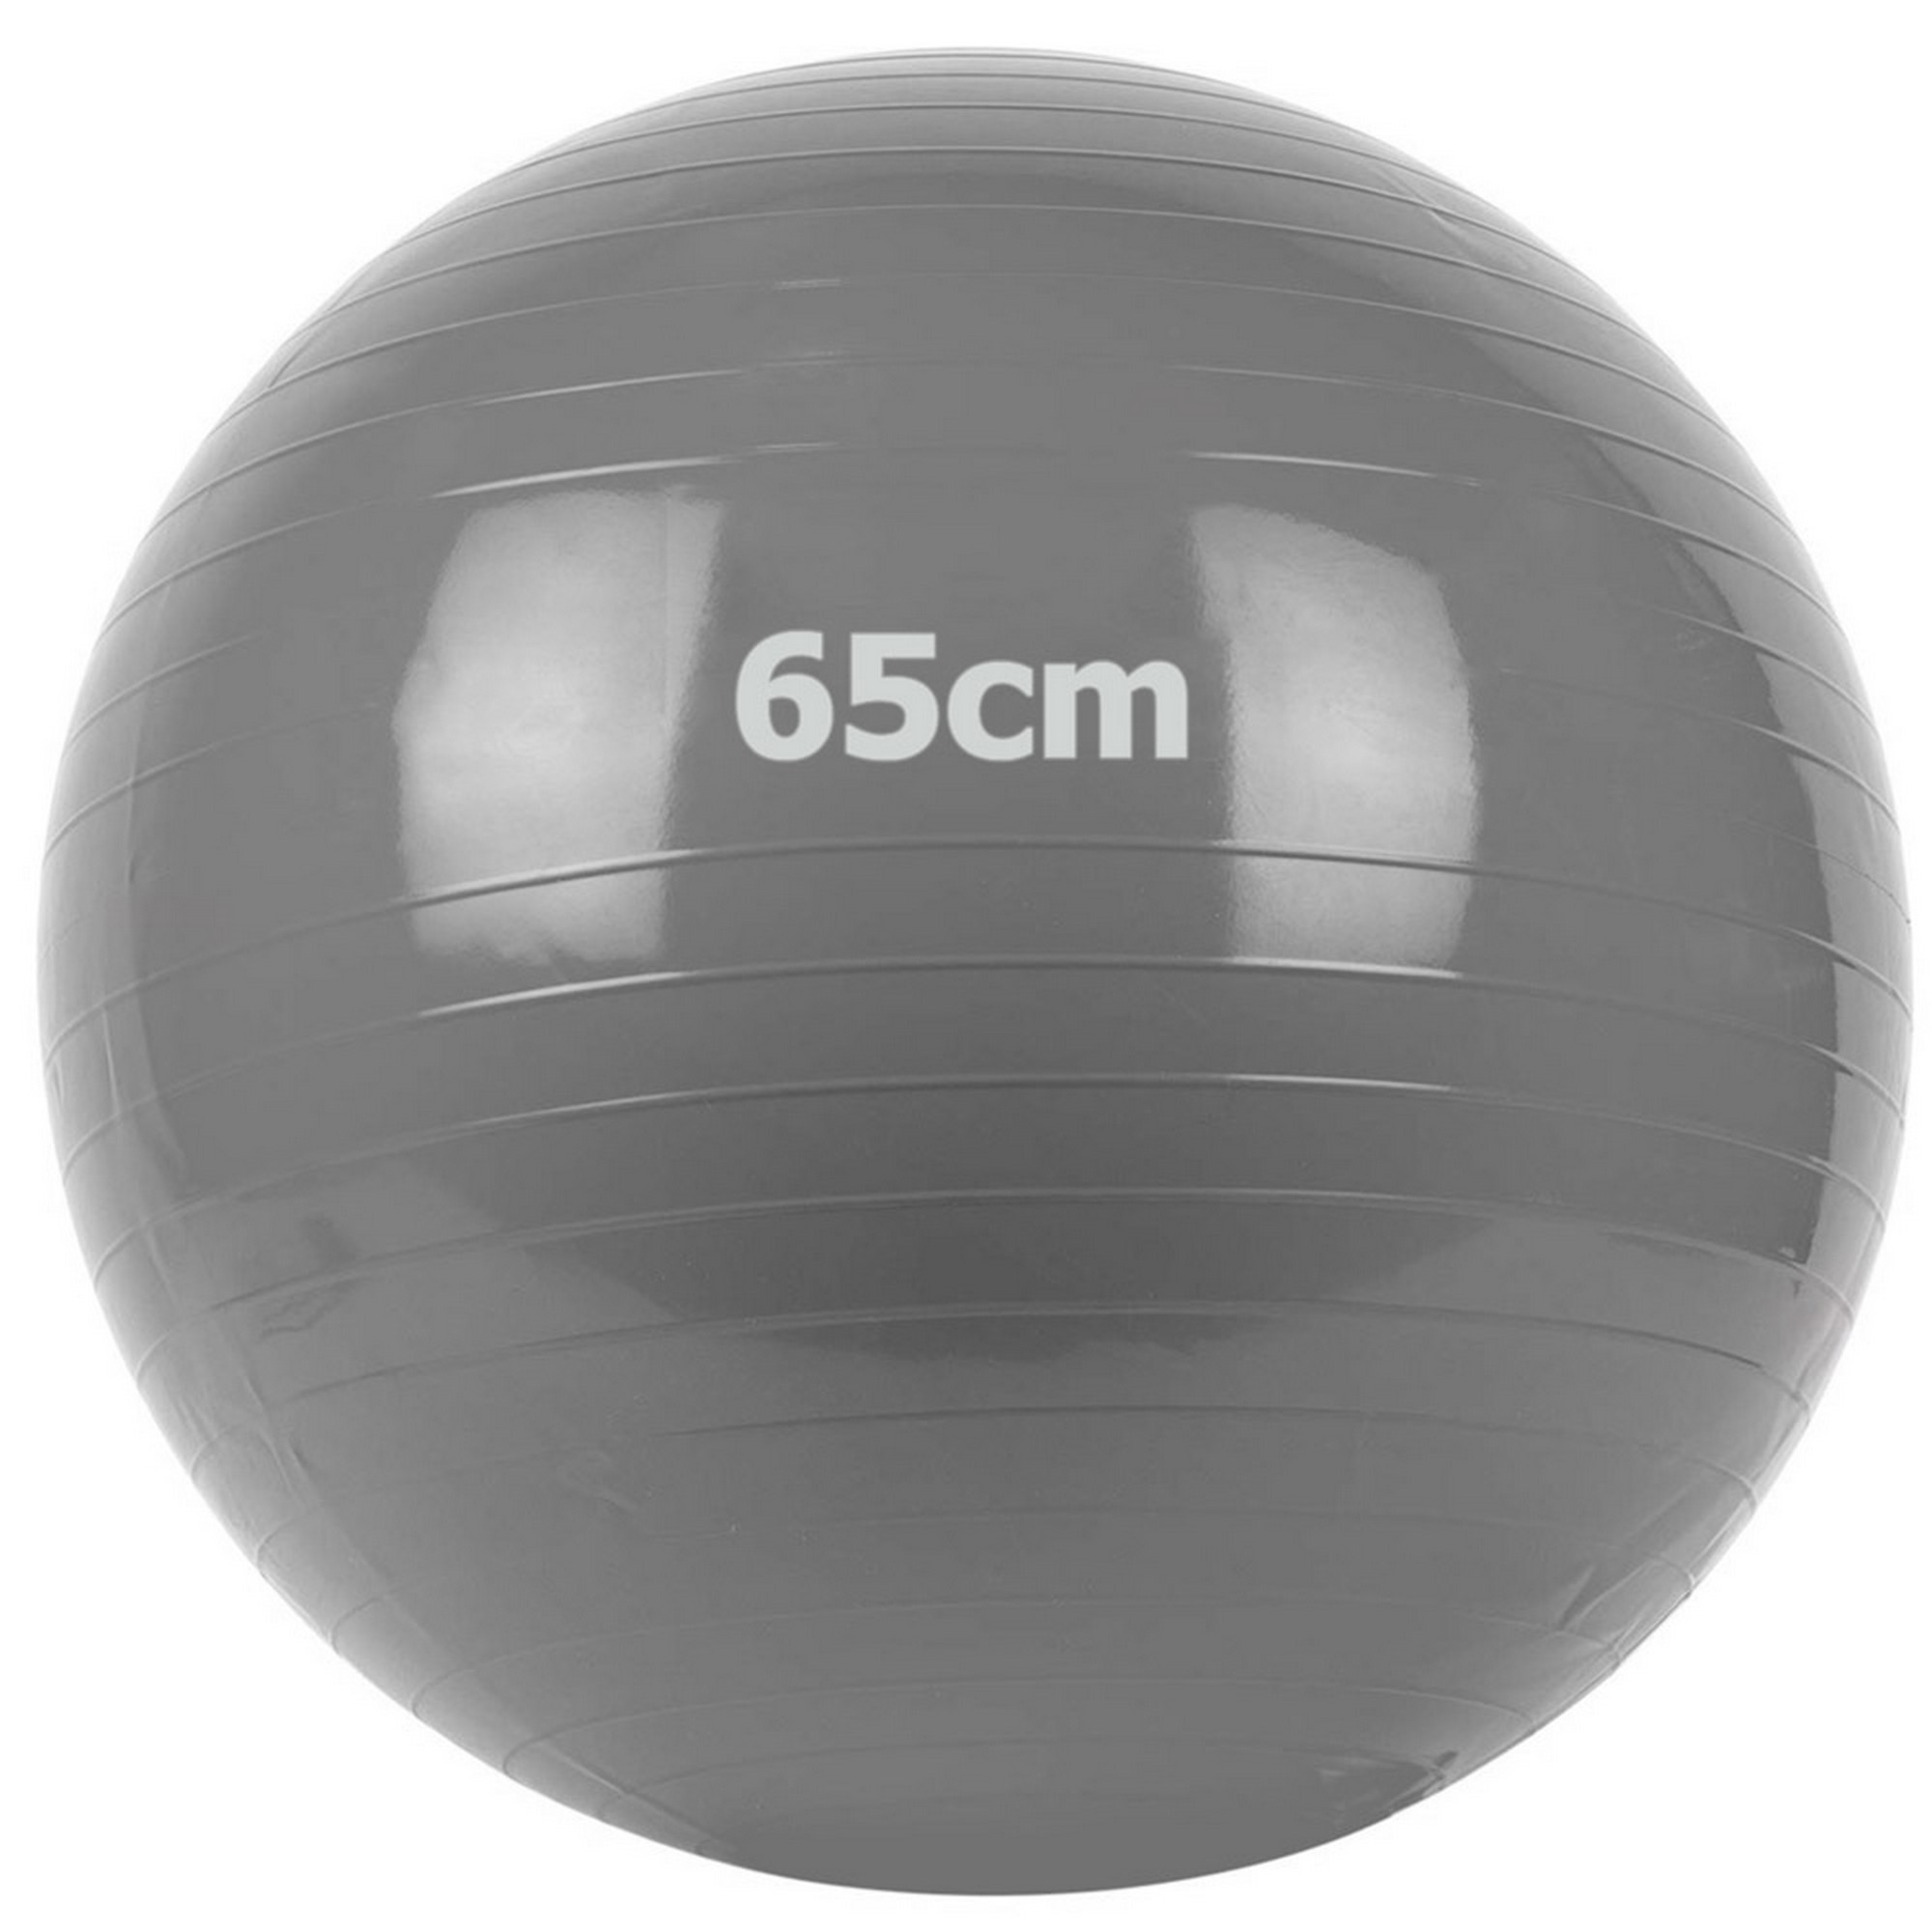 Купить Мяч гимнастический Gum Ball d65 см Sportex GM-65-1 серый,